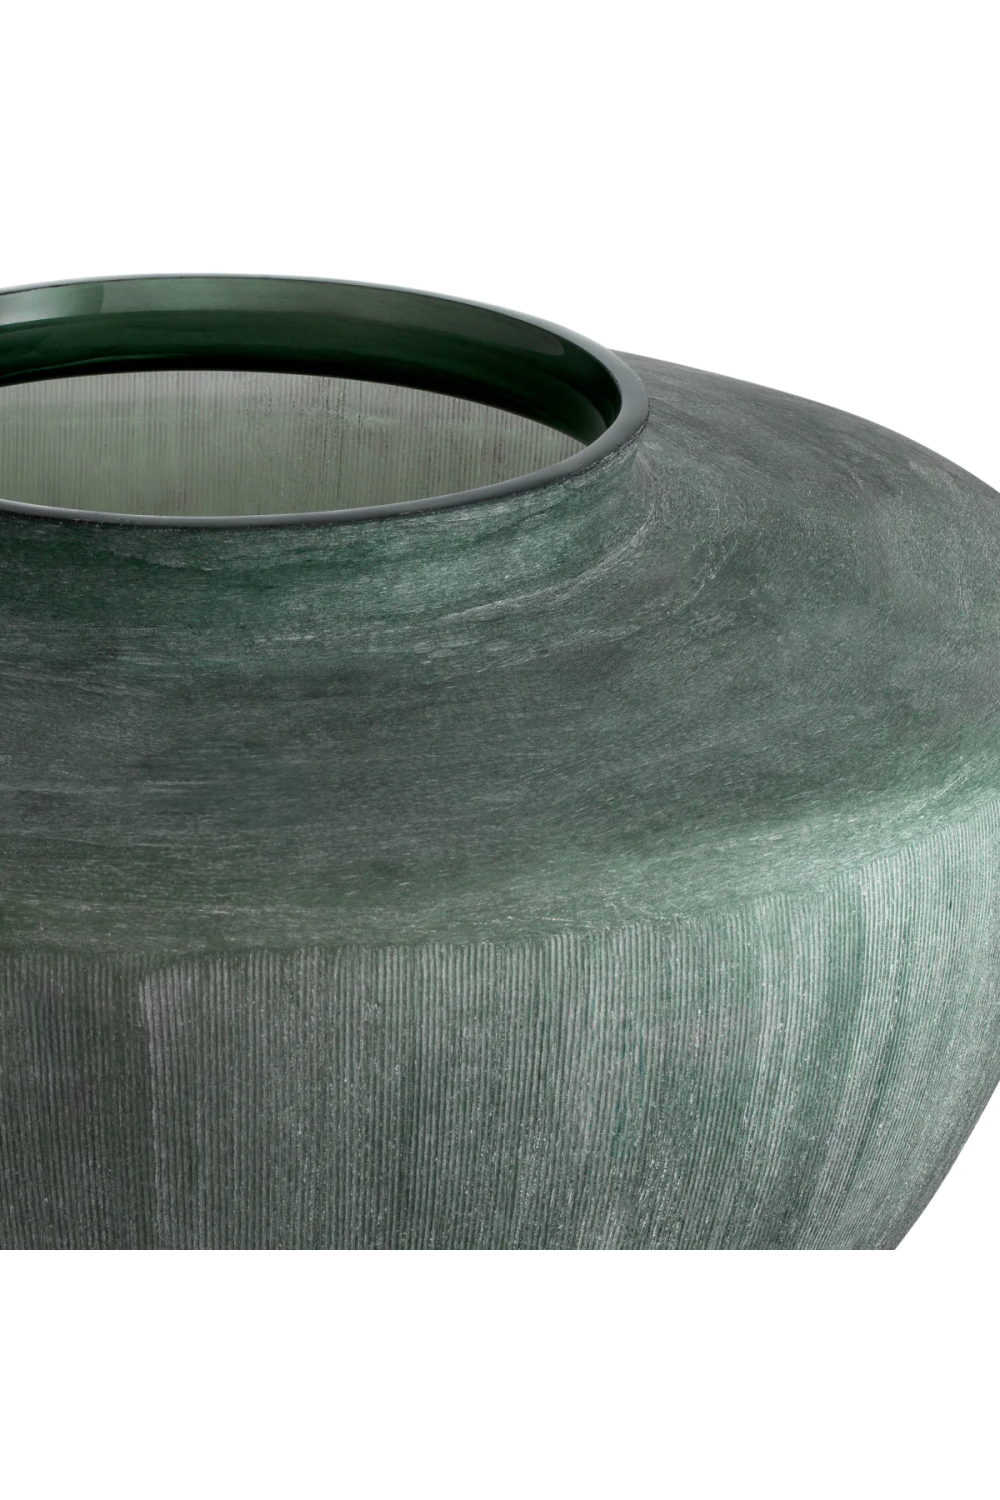 Green Handblown Glass Vase | Eichholtz Wainscott | Oroa.com